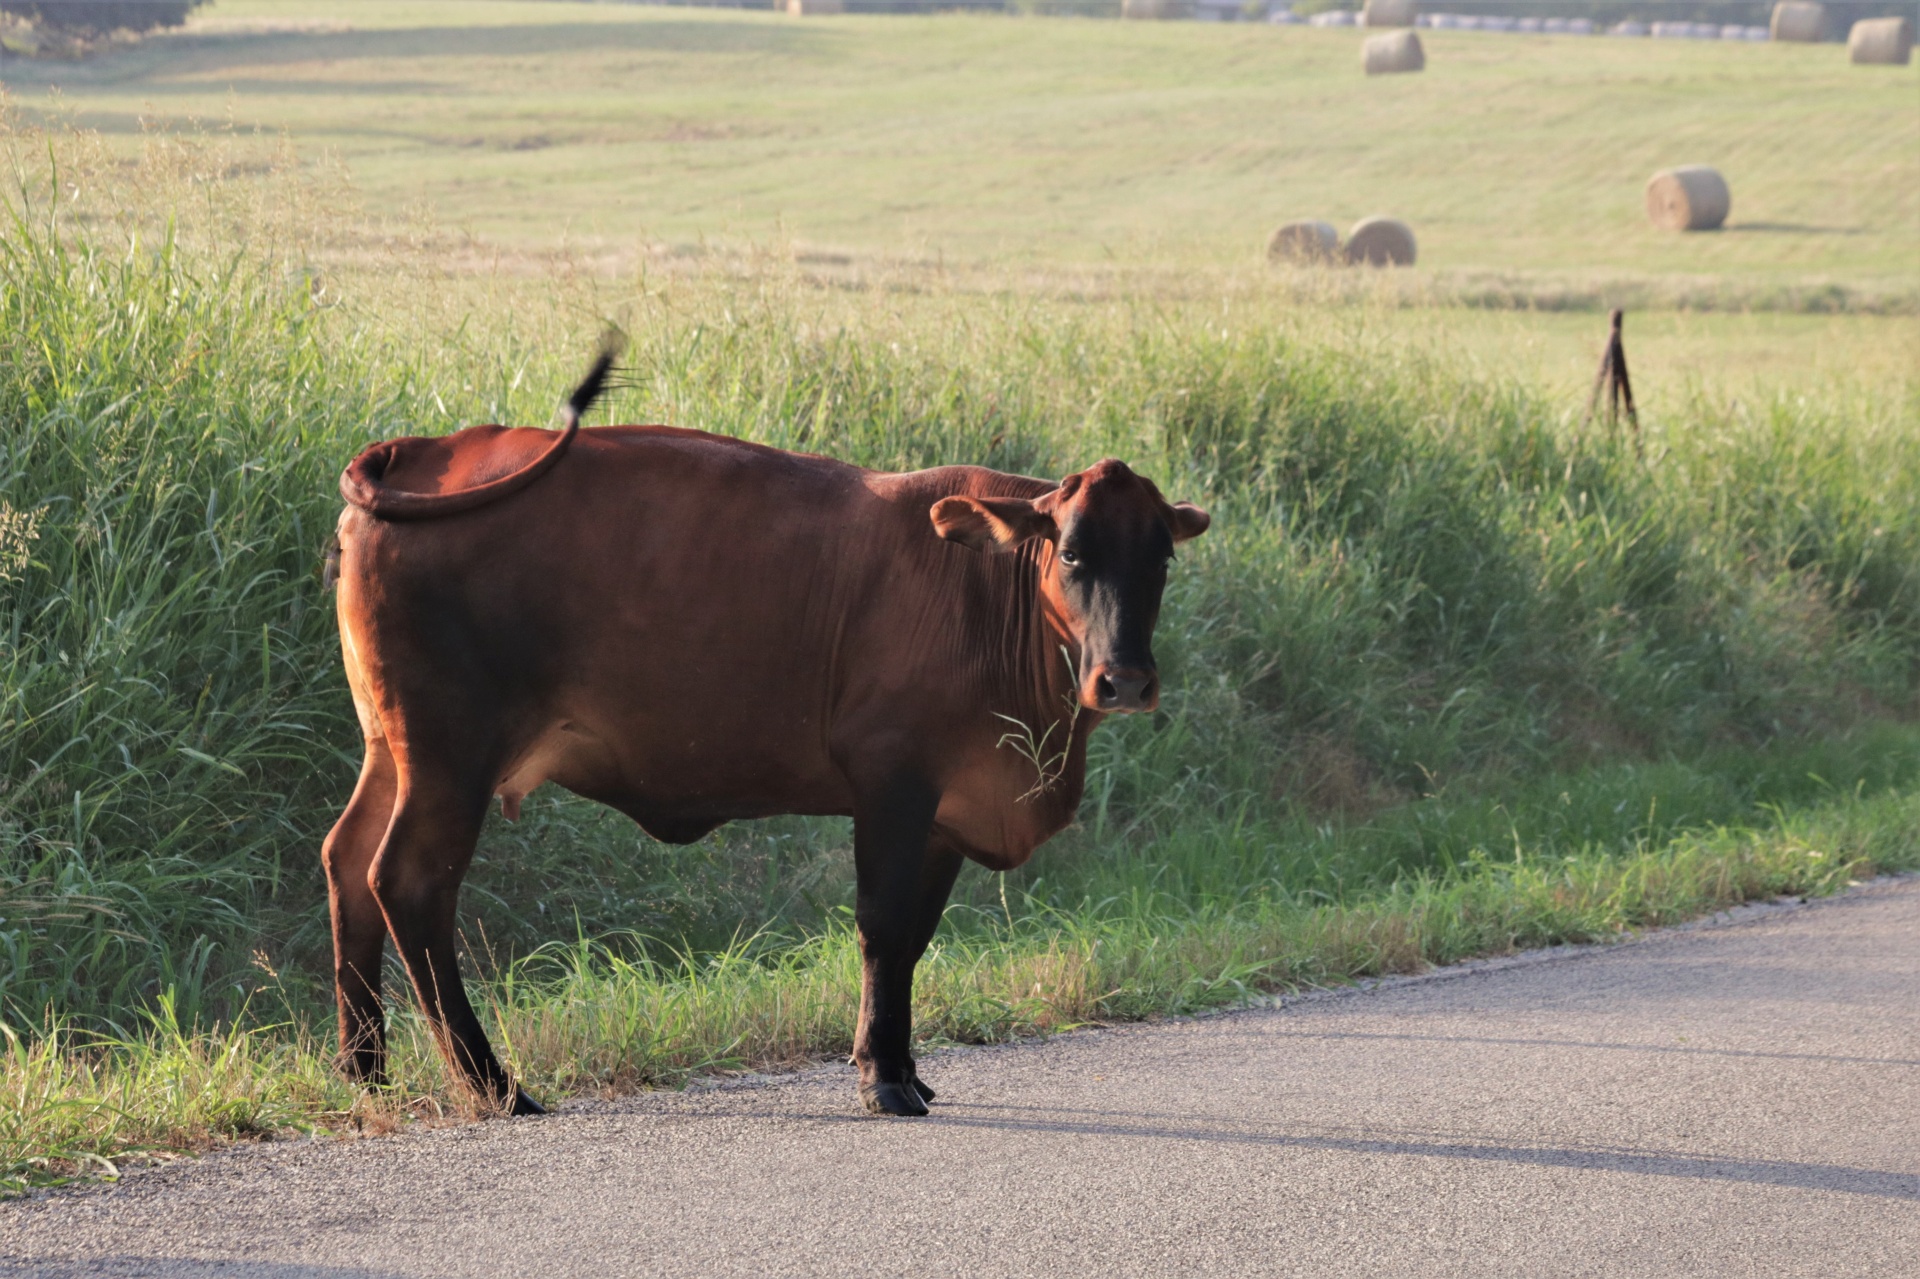 Bruine koe aan de kant van de landweg